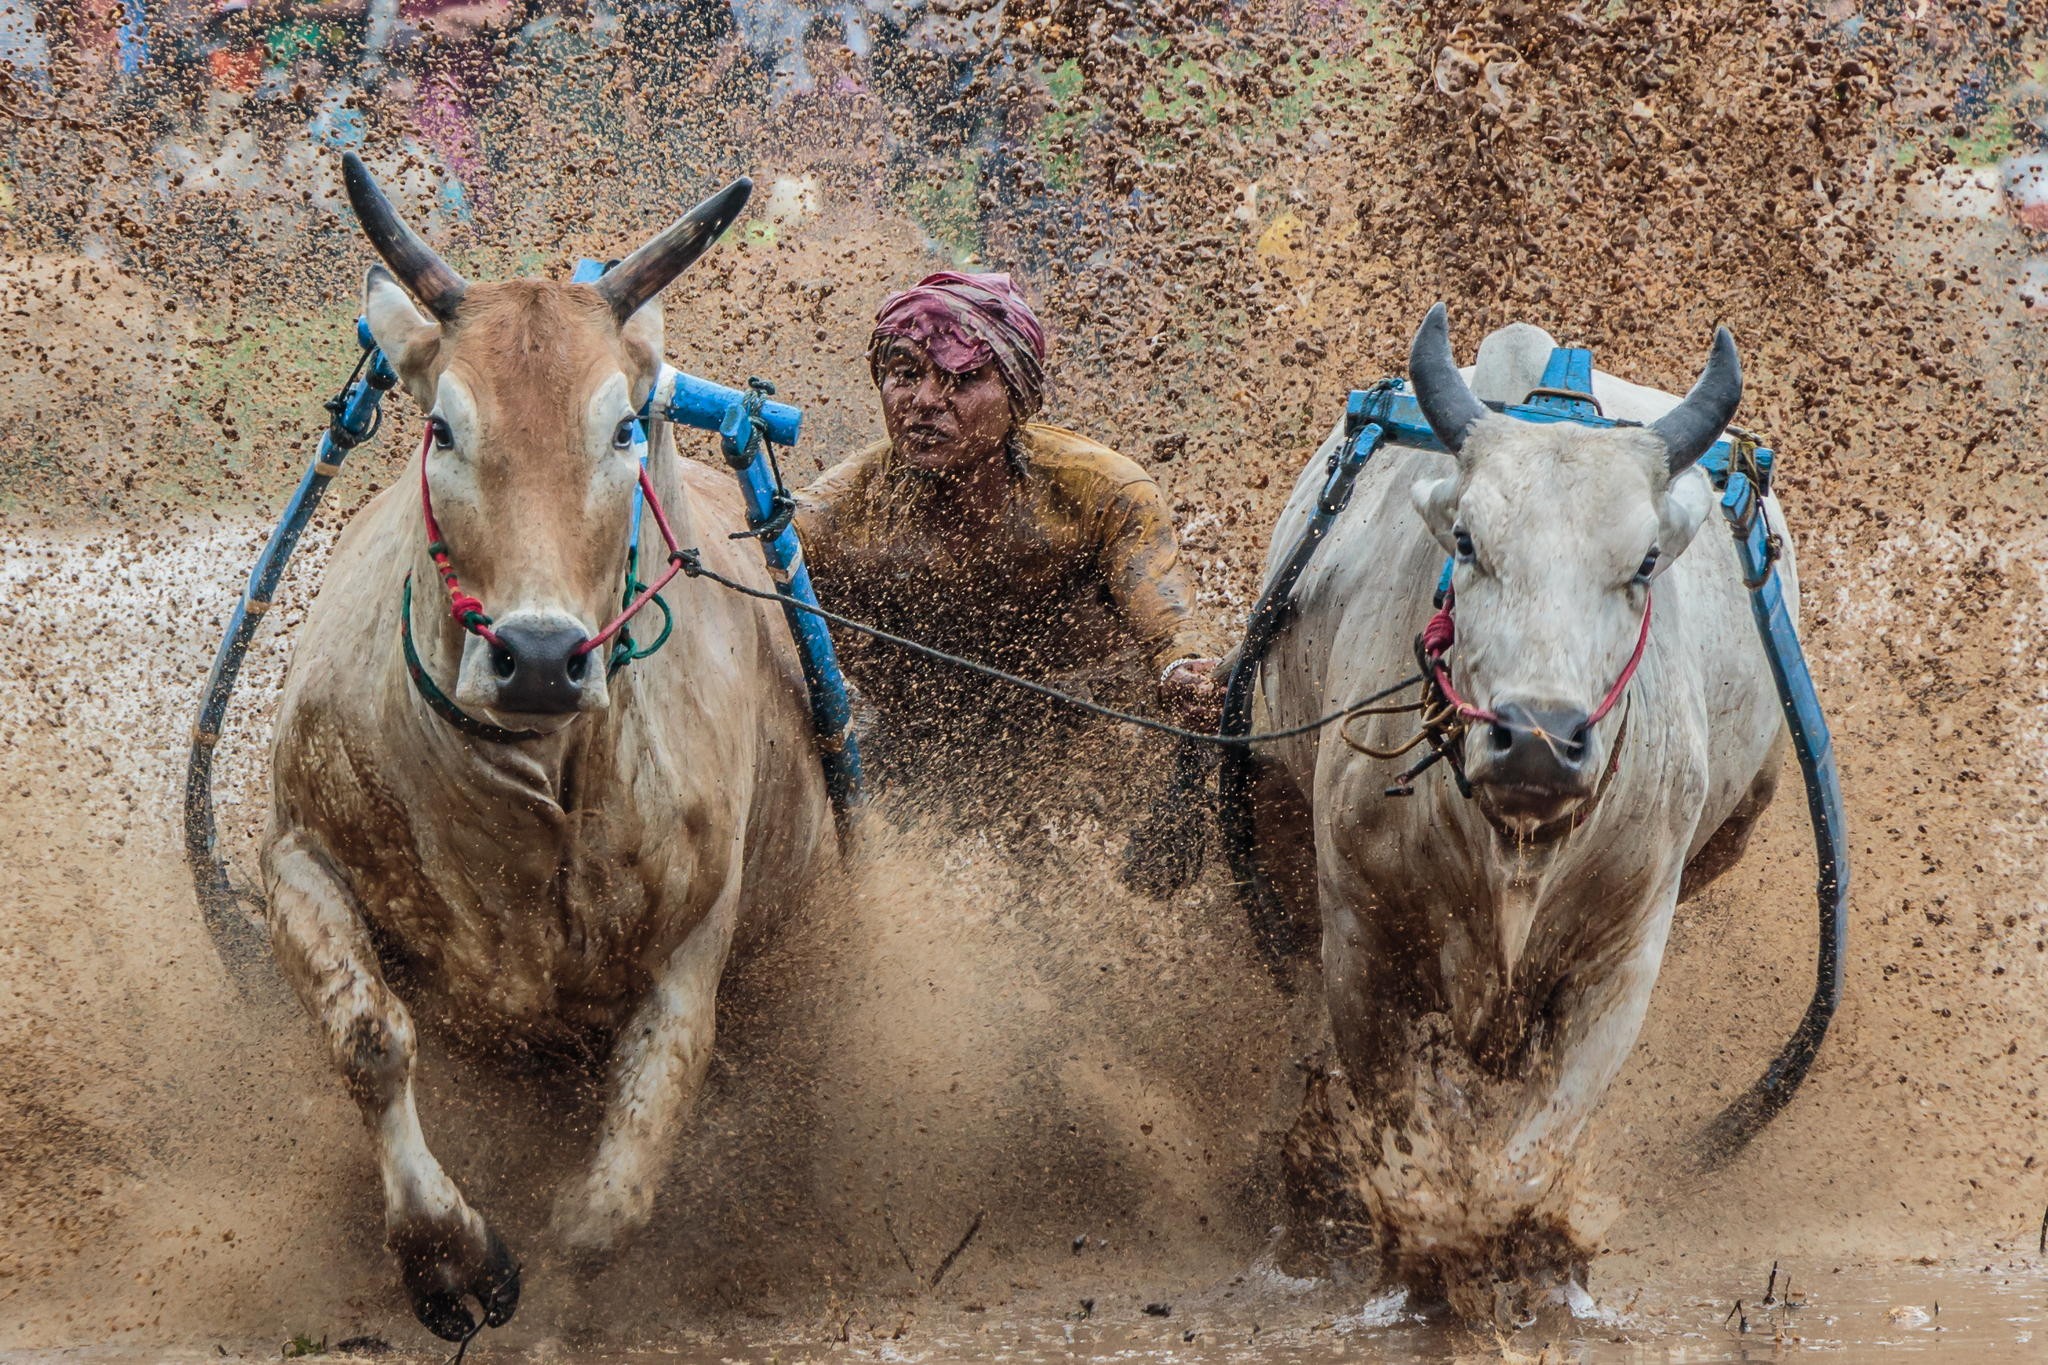 General 2048x1365 animals mud running bulls Indonesia men Asia dirt